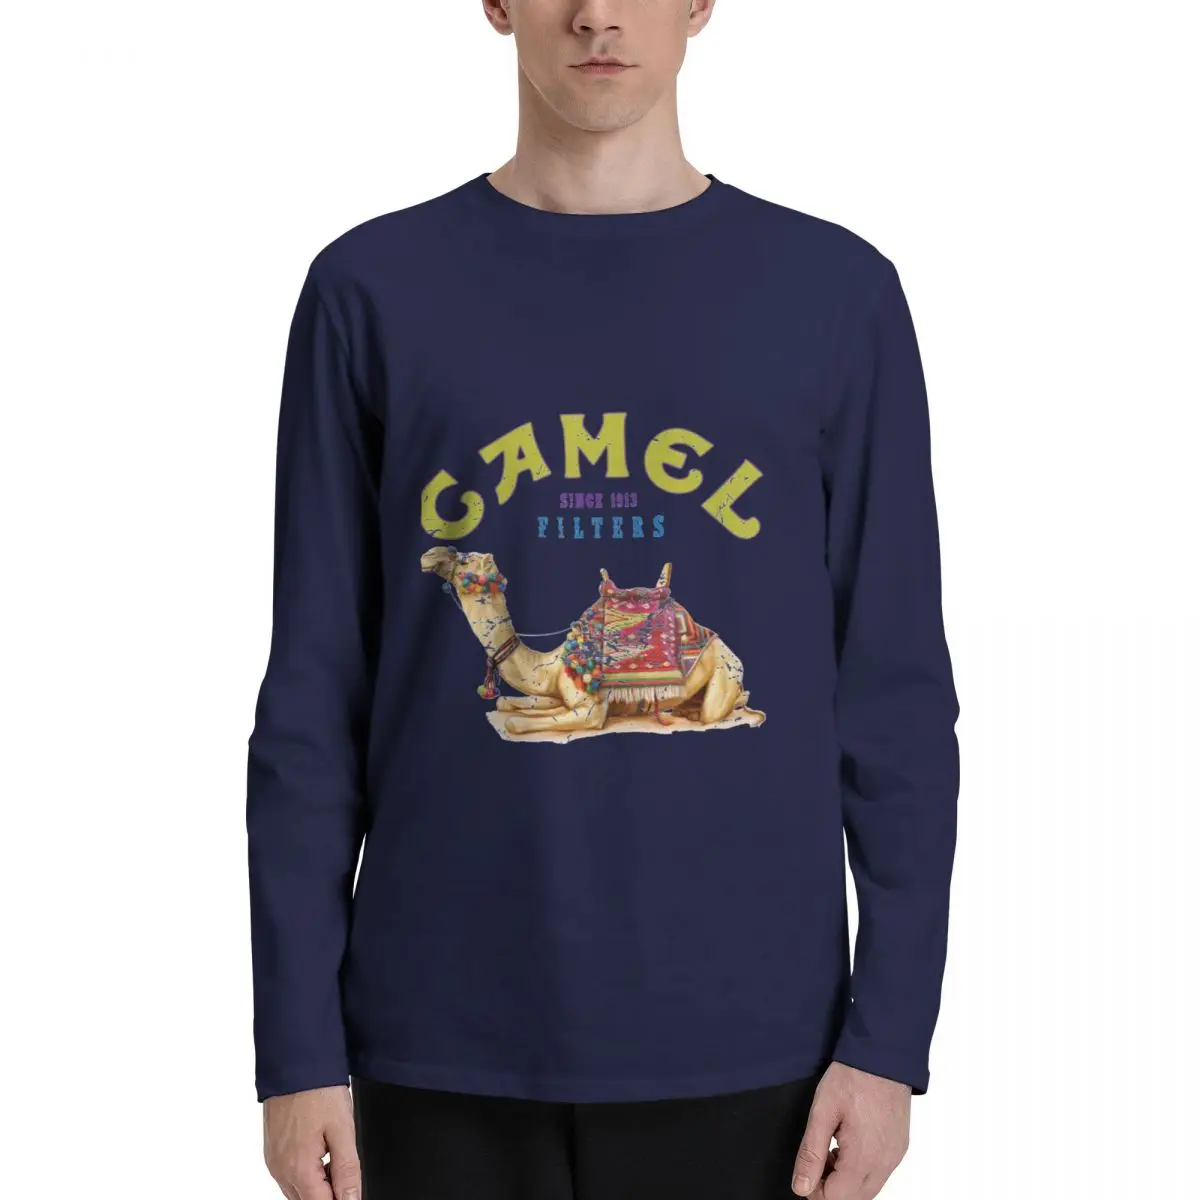 Футболки с длинными рукавами от Dromadary Camel Crush Cigarette Joe Camel Design, одежда kawaii, милая одежда, дизайнерские футболки для мужчин